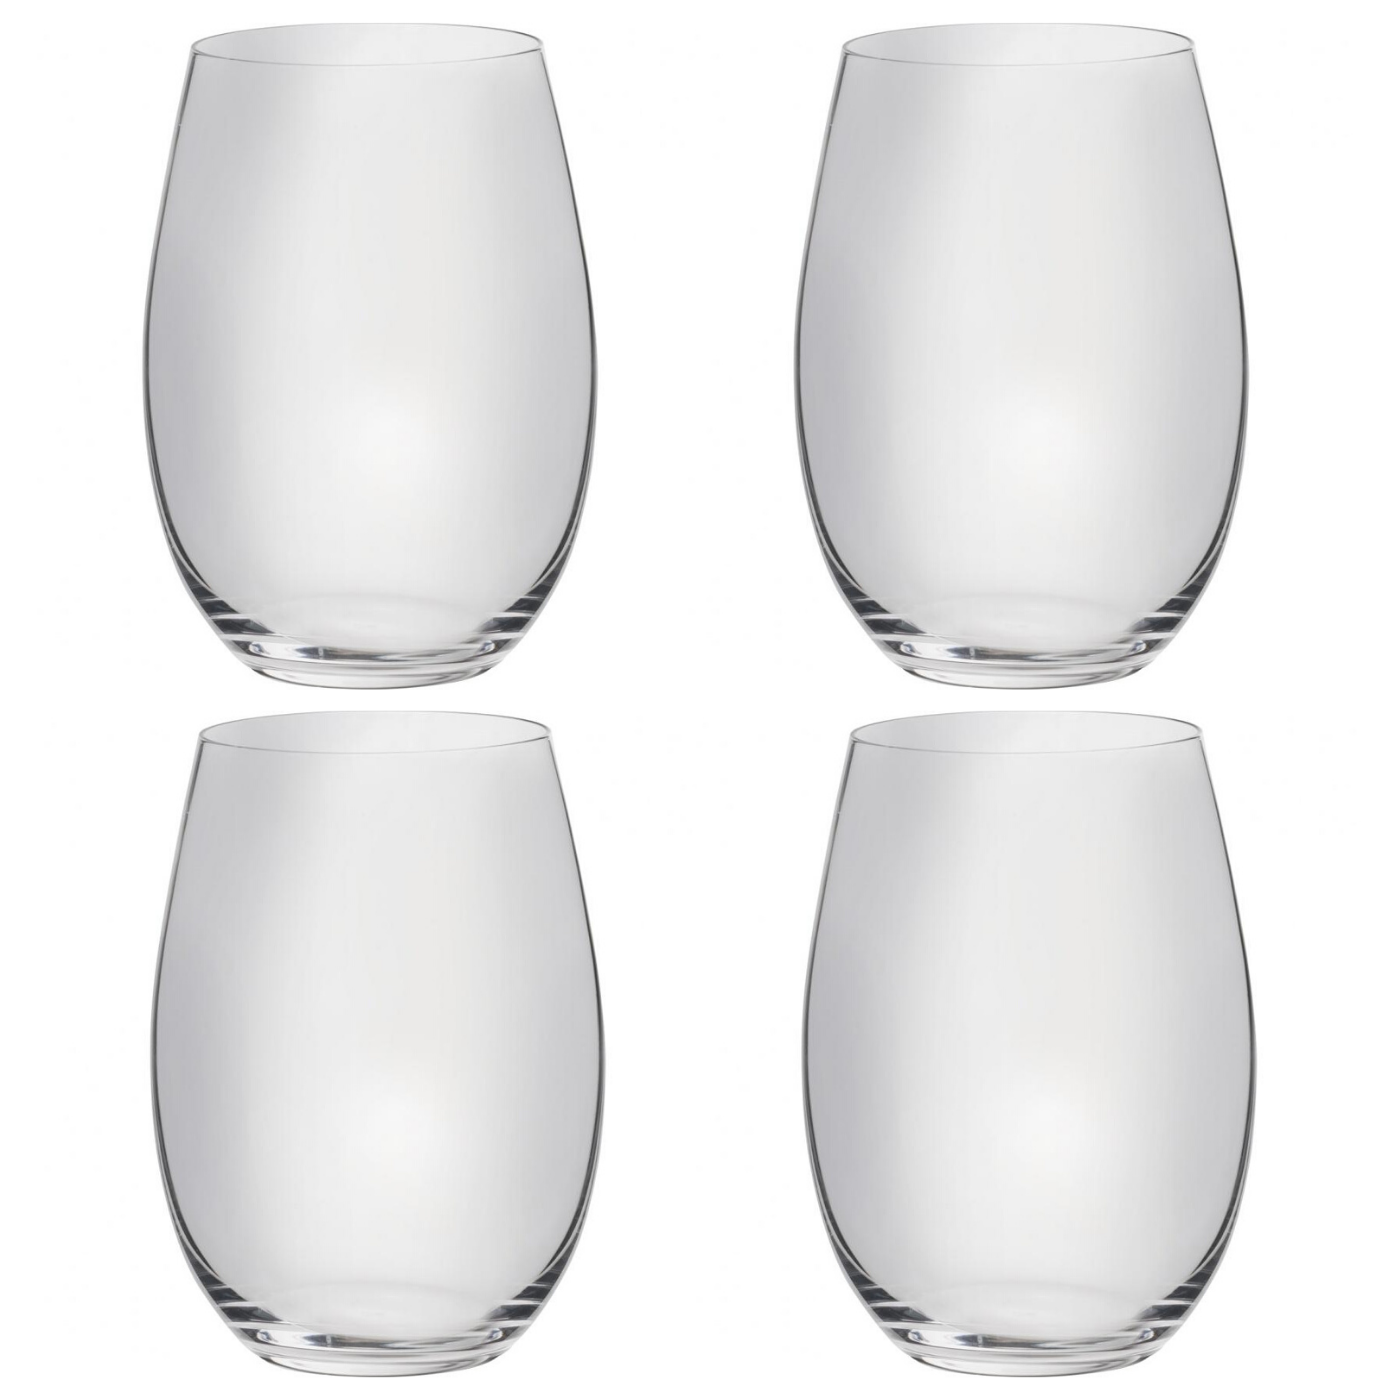 Splendido Stemless Wine Glasses (set of 4)